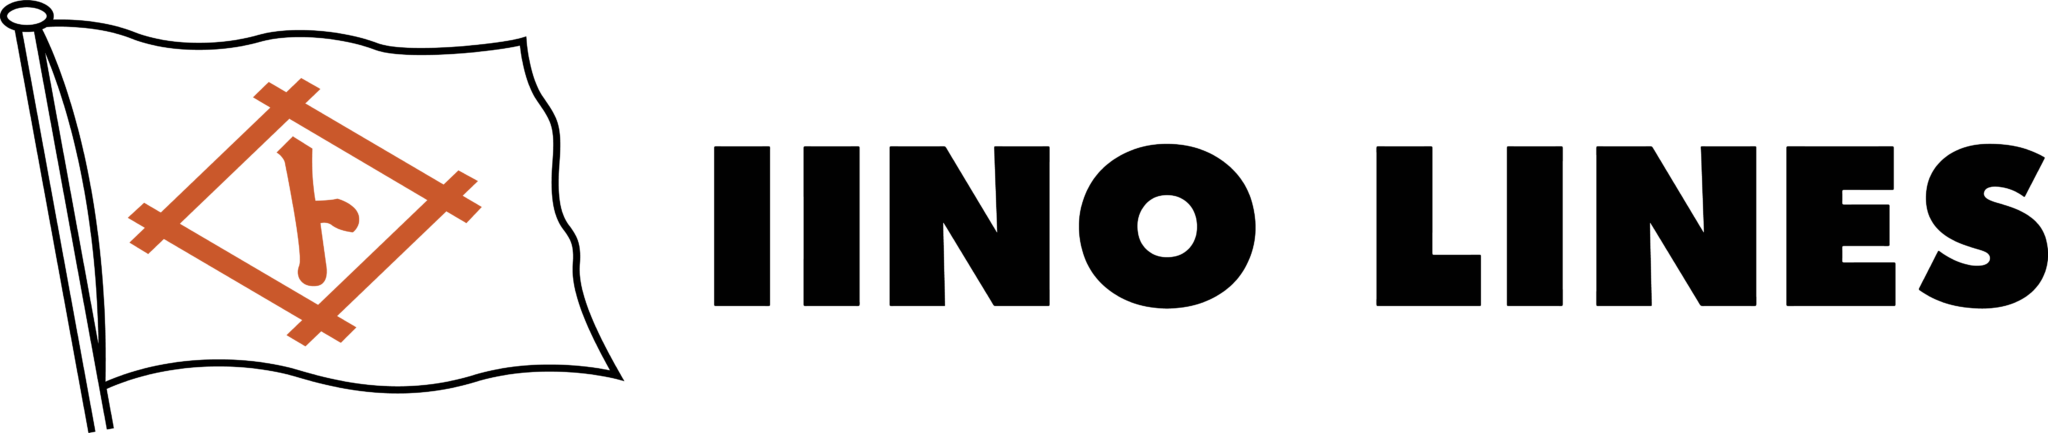 Iino Lines Logo English 2048x433 2